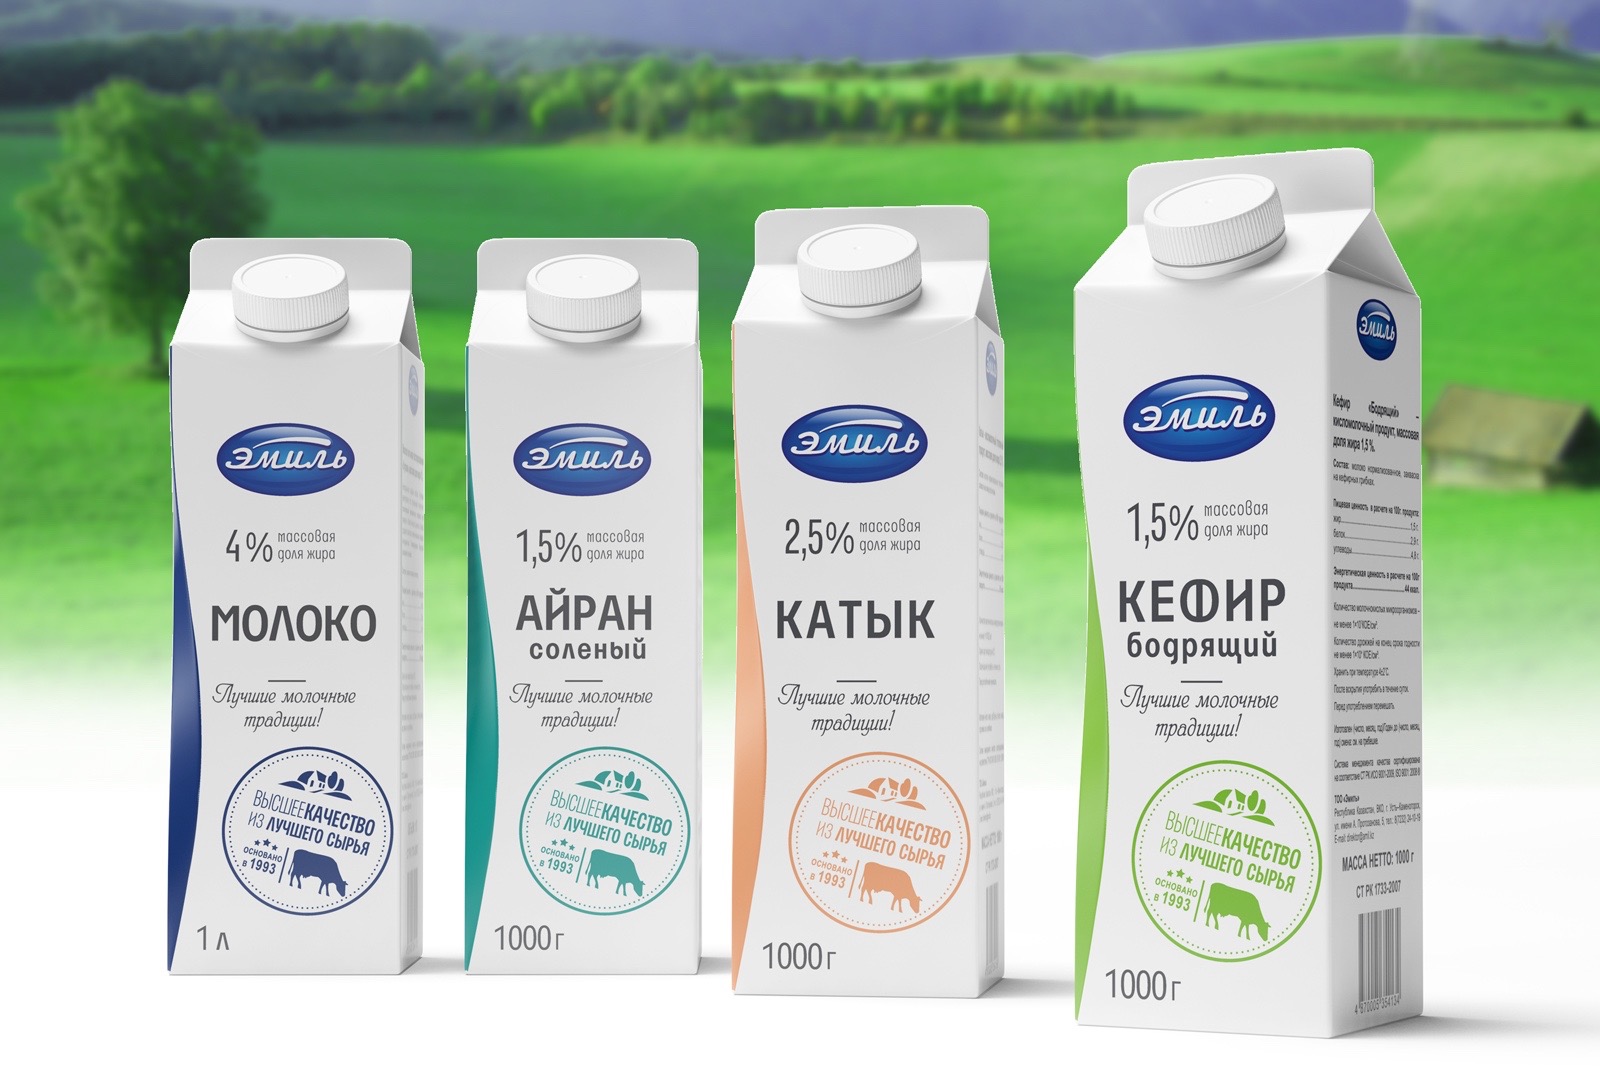 Молочная продукция Эмиль, Казахстан, ребрендинг, разработка бренда, дизайн упаковки, бренд-архитектура, брендинговое агентство Depot WPF